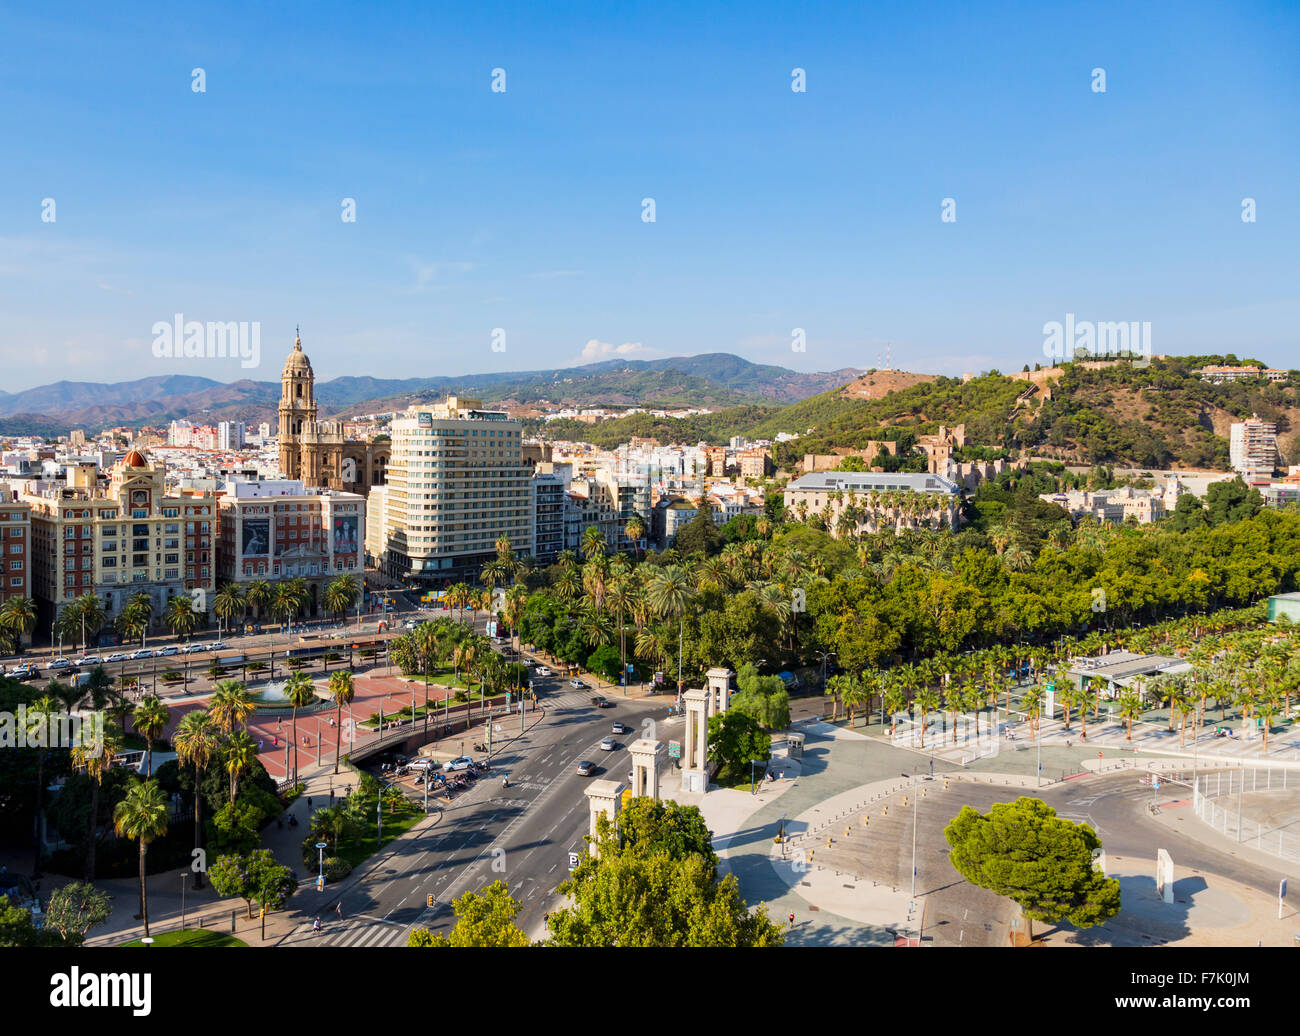 Malaga, Costa del Sol, la province de Malaga, Andalousie, Espagne du sud. À gauche, la tour de la cathédrale. Banque D'Images